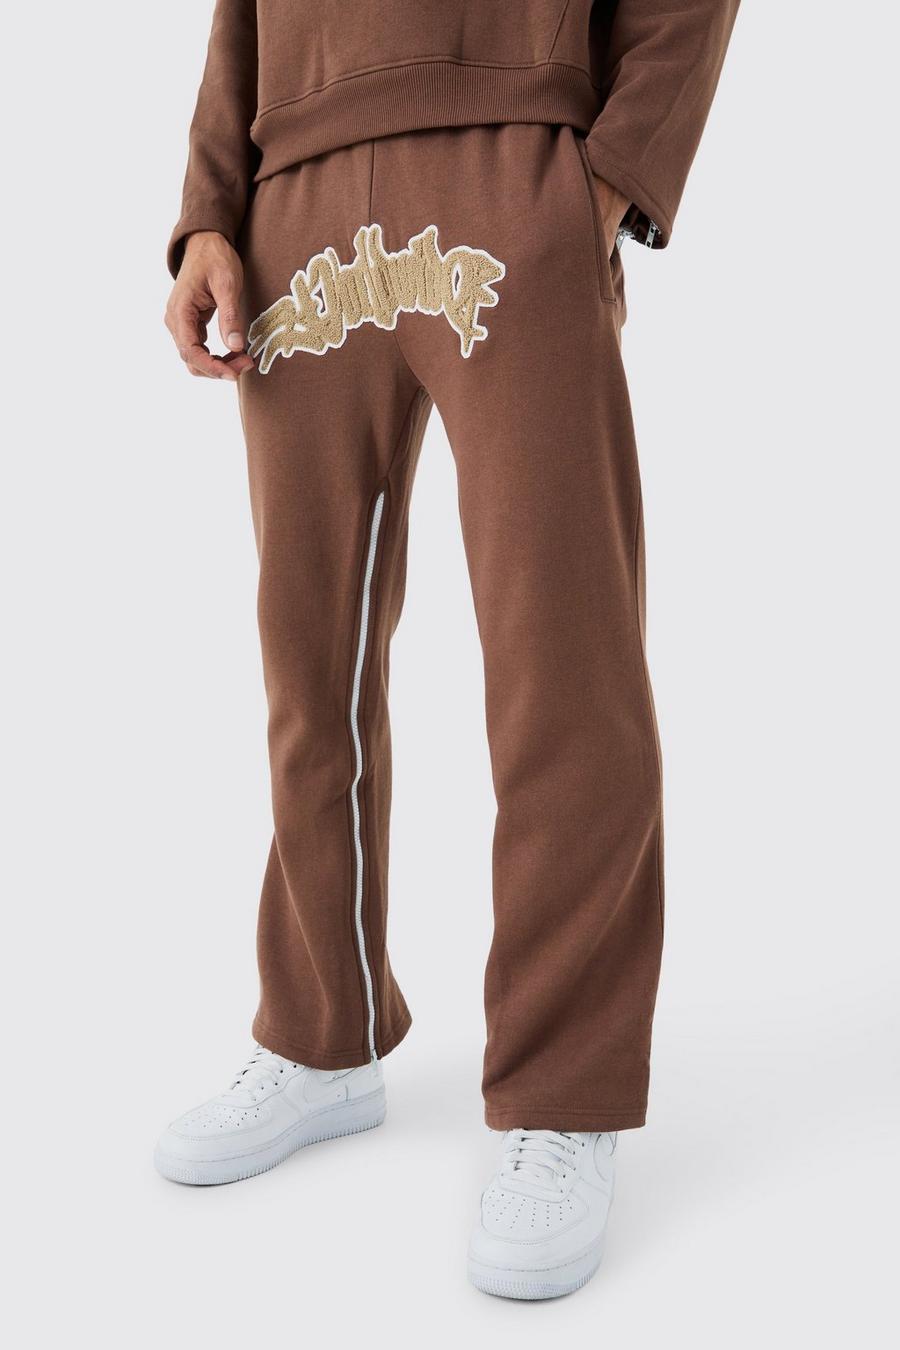 Pantaloni tuta Worldwide con inserti, applique e zip, Chocolate